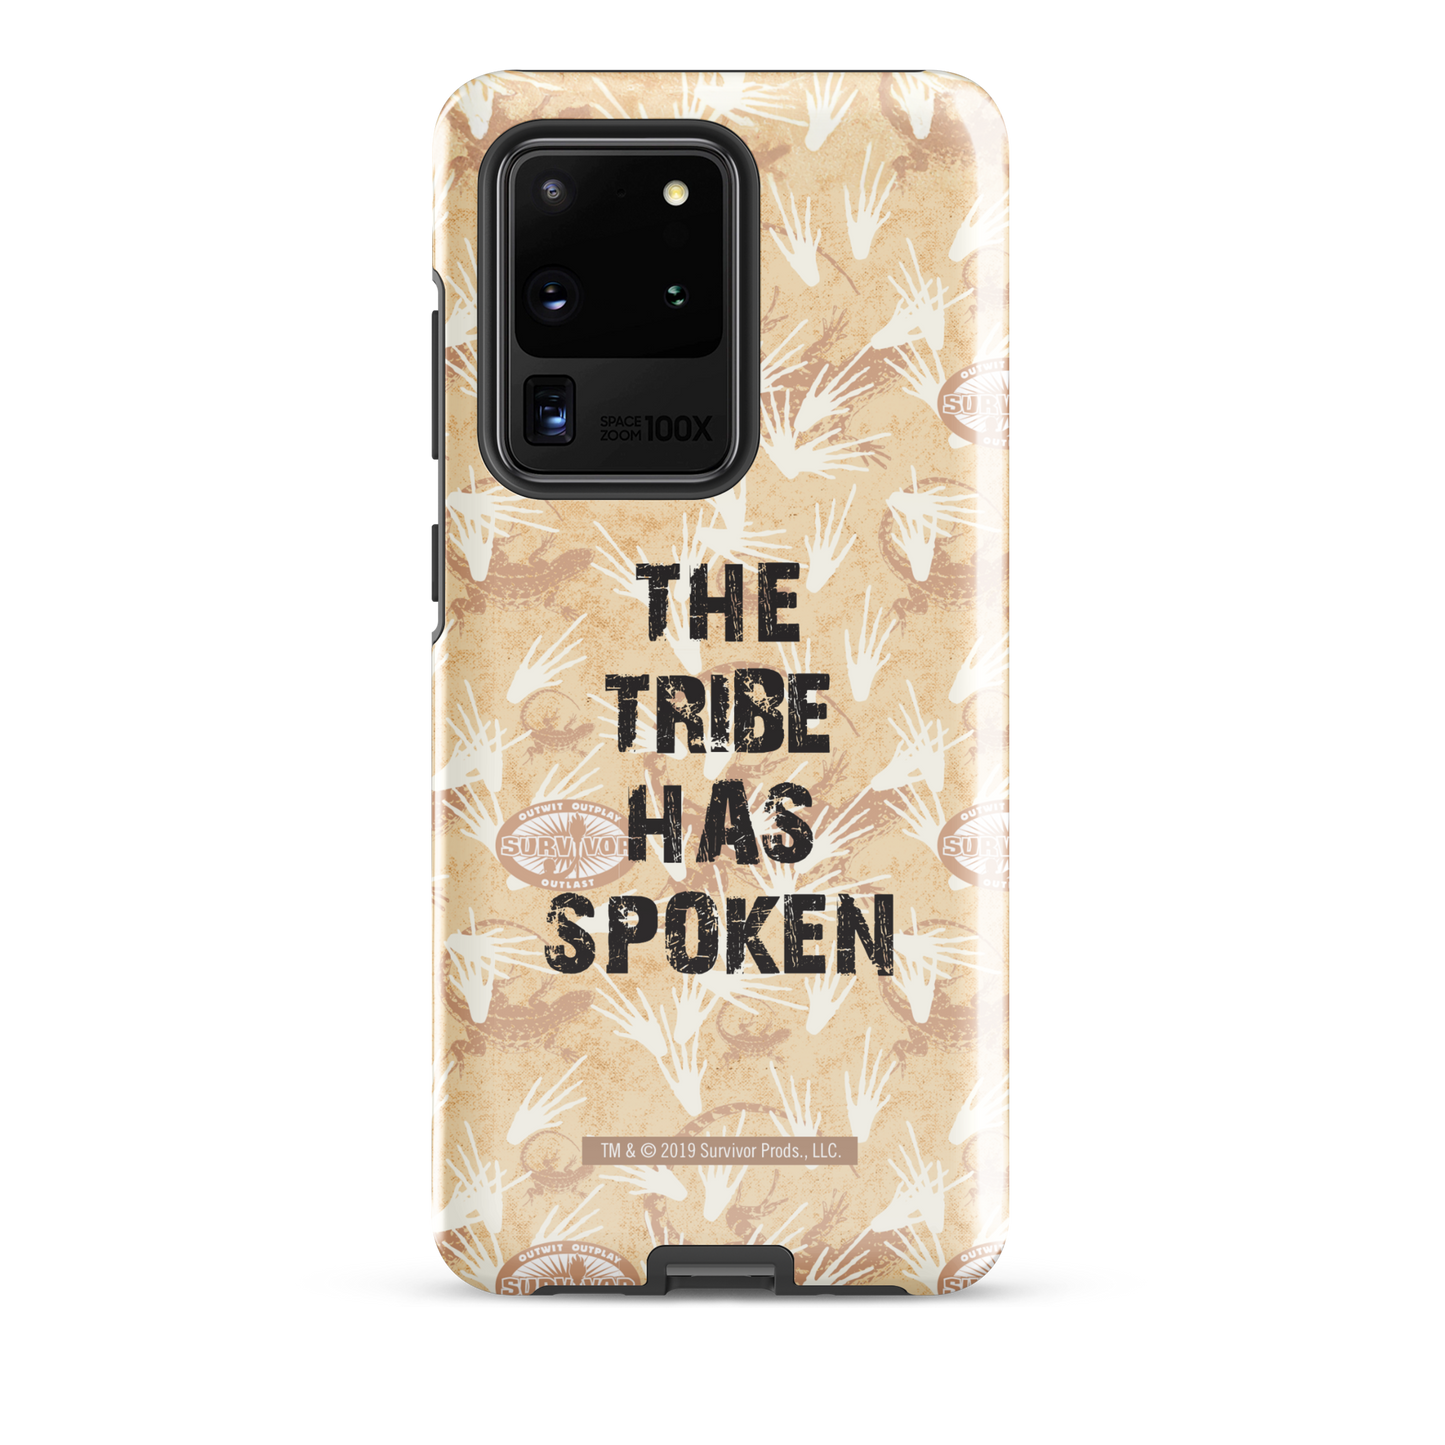 Survivor La tribu ha hablado Funda resistente para teléfono - Samsung